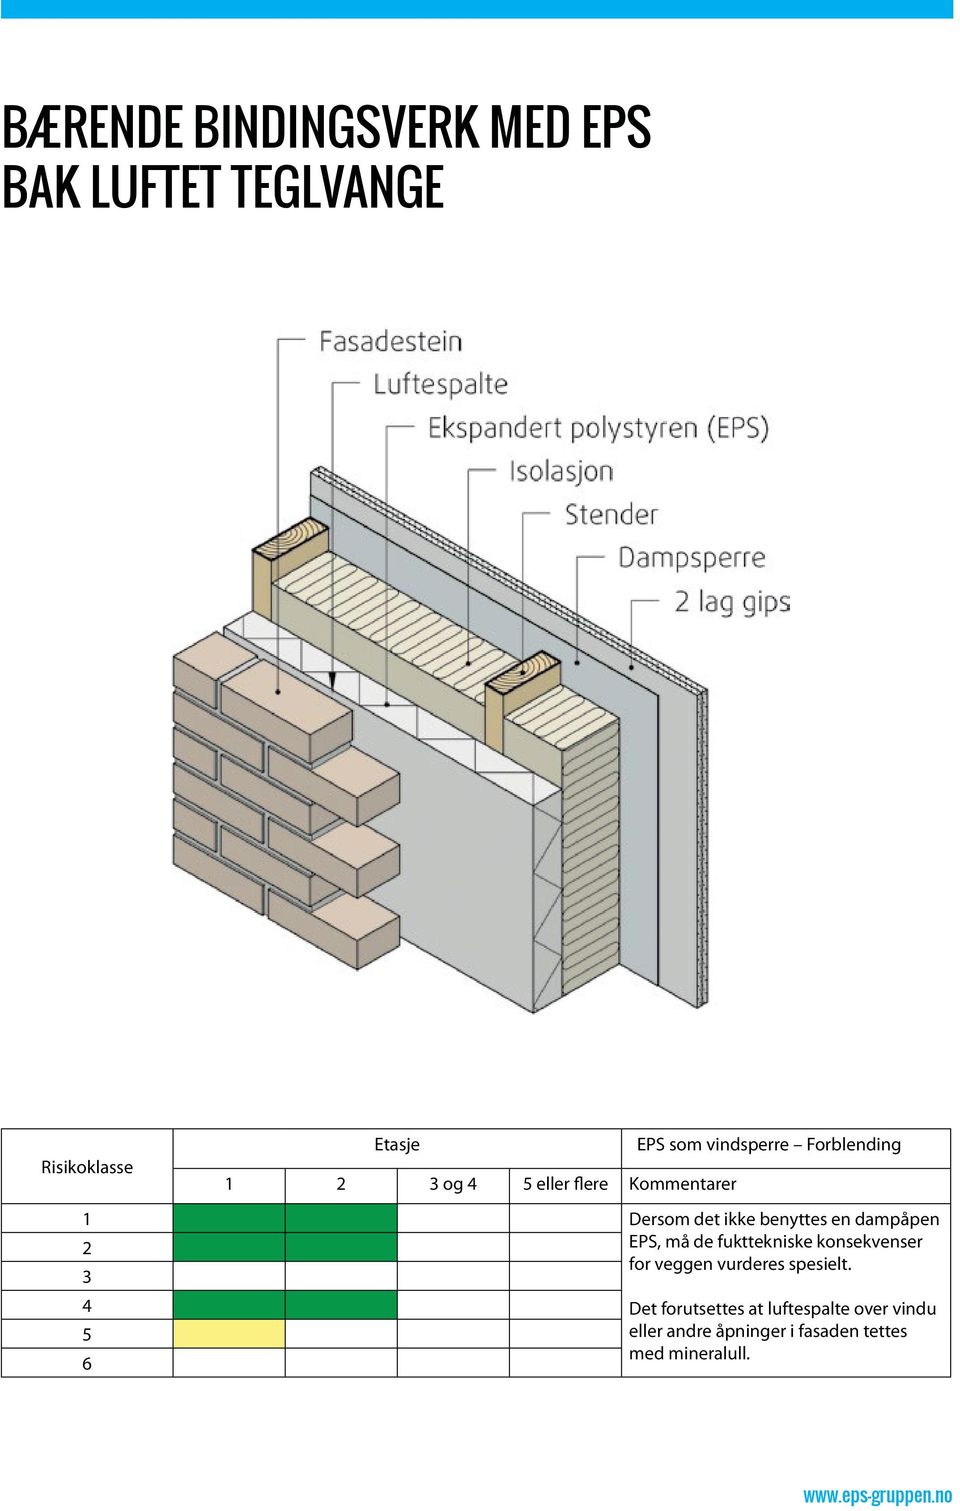 fukttekniske konsekvenser for veggen vurderes spesielt.